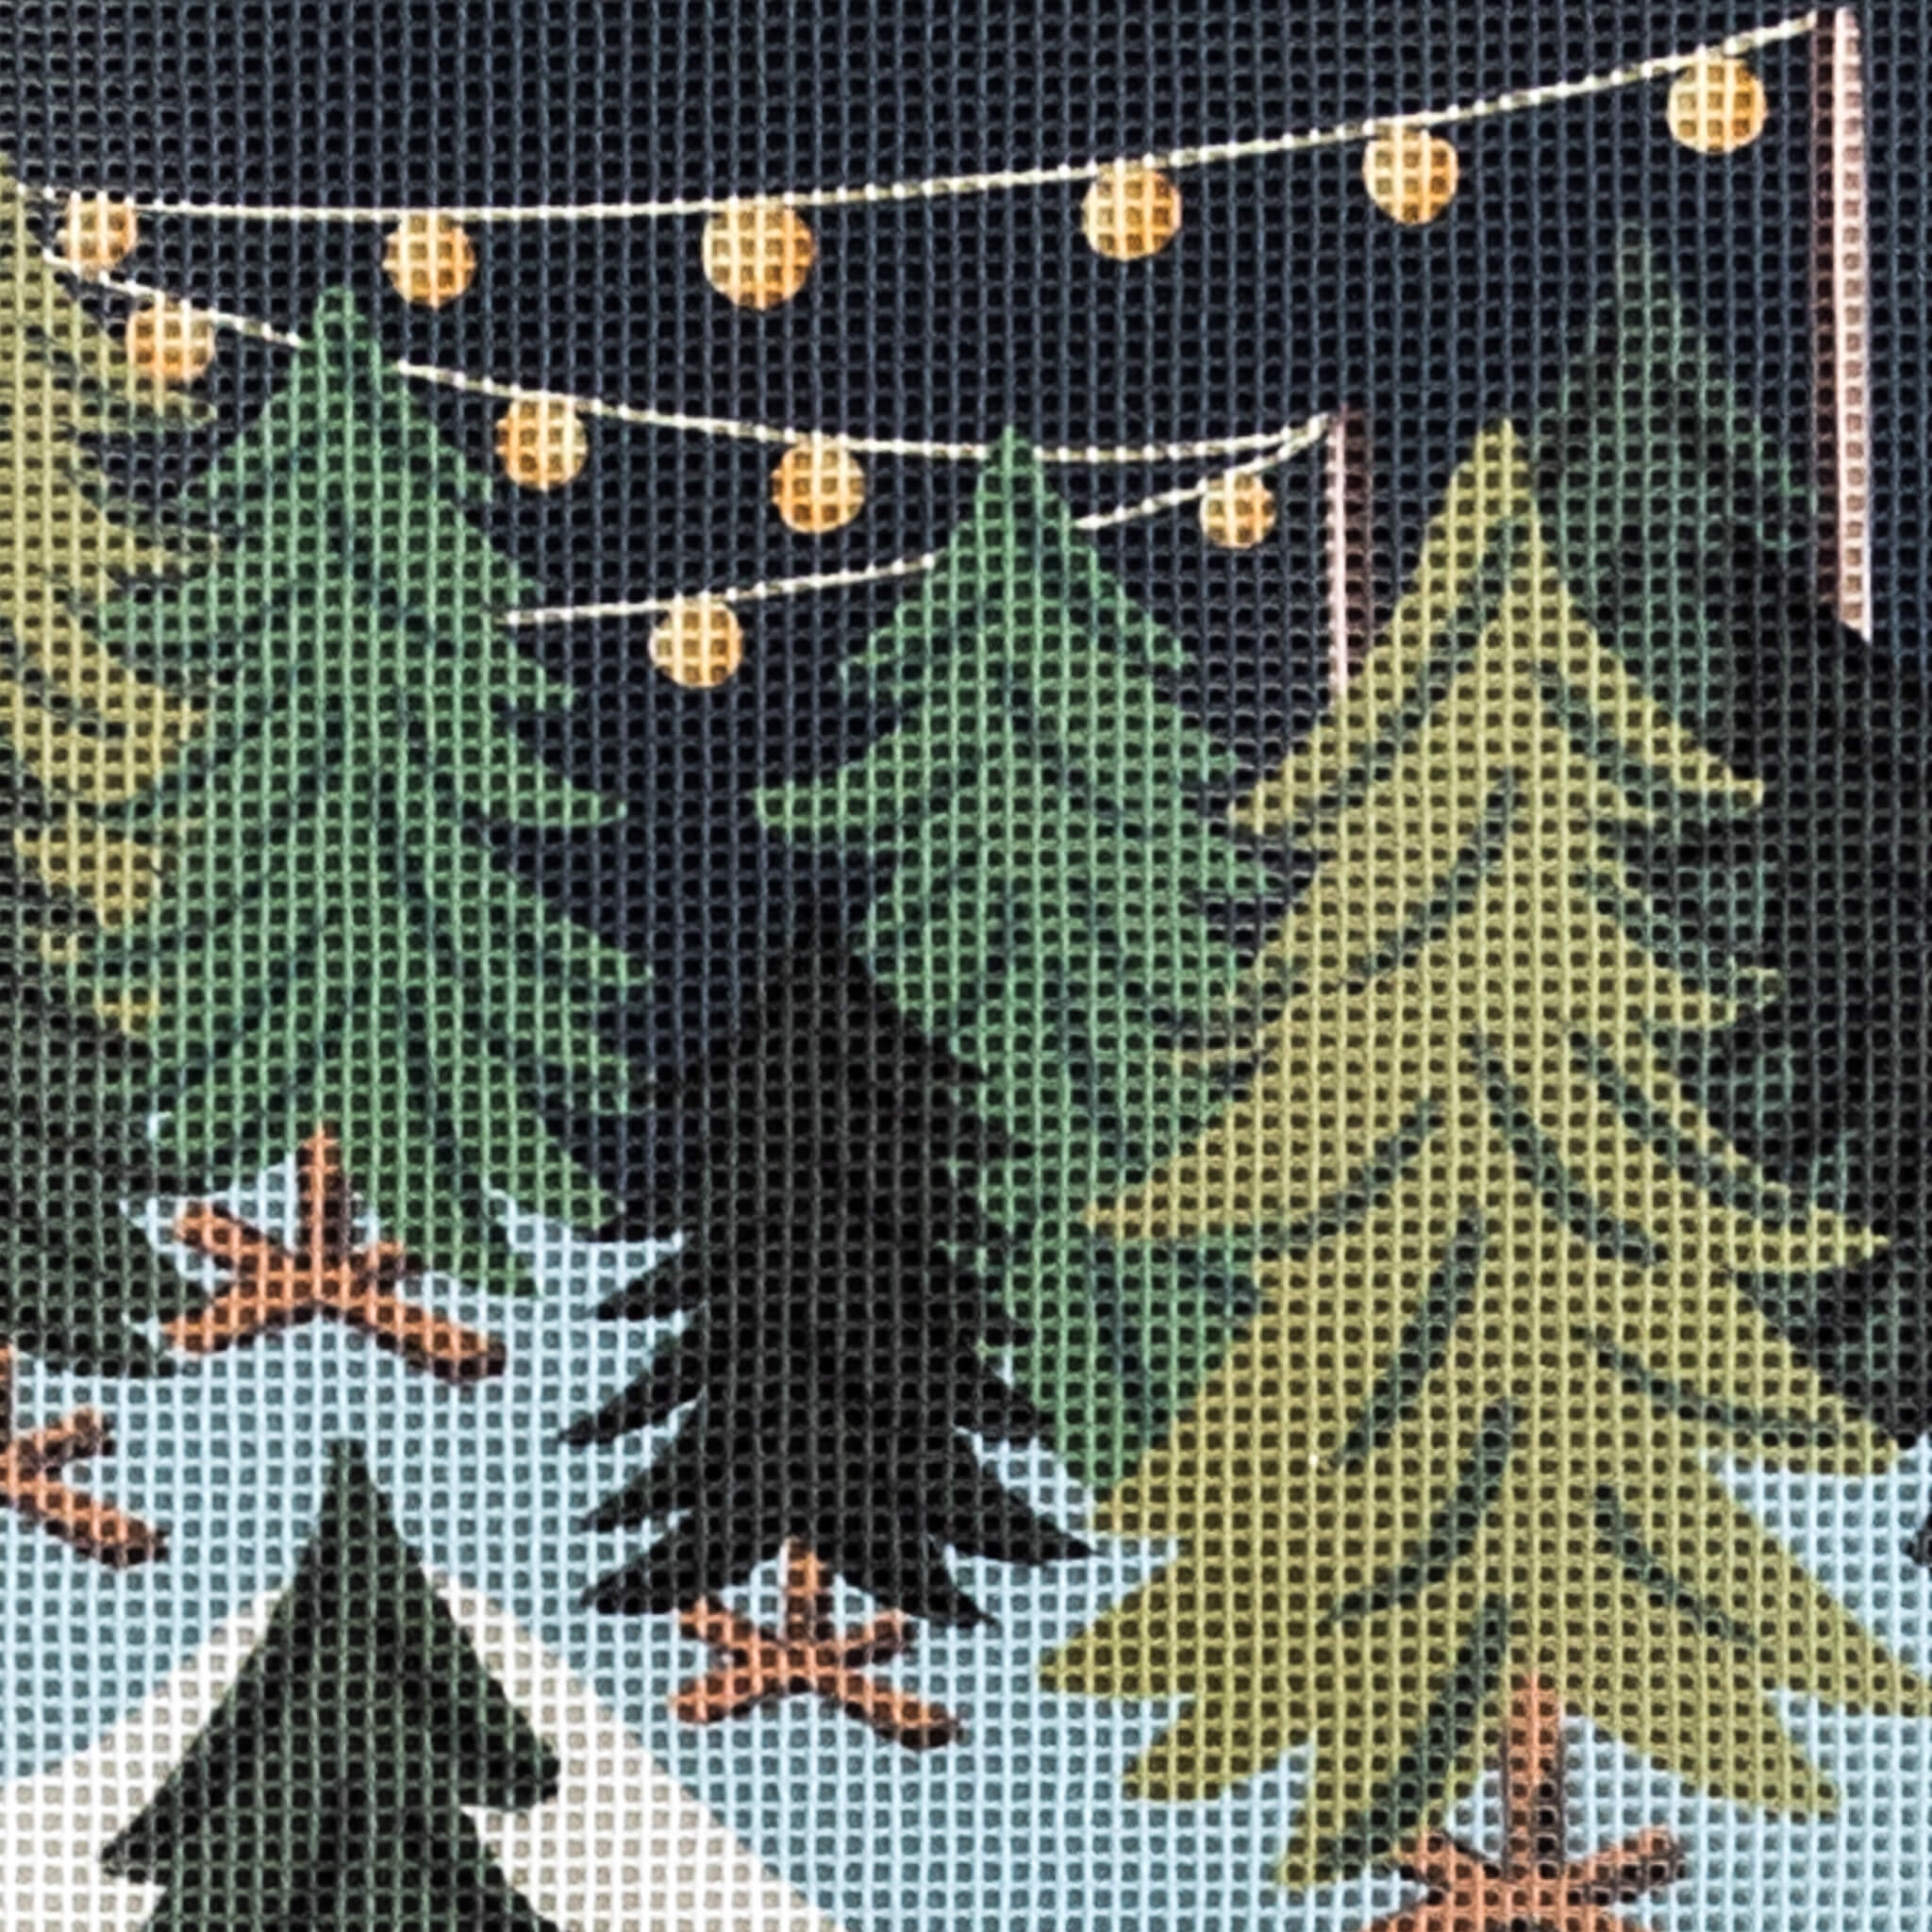 Needlepoint Christmas Stocking Kits – Spider Spun